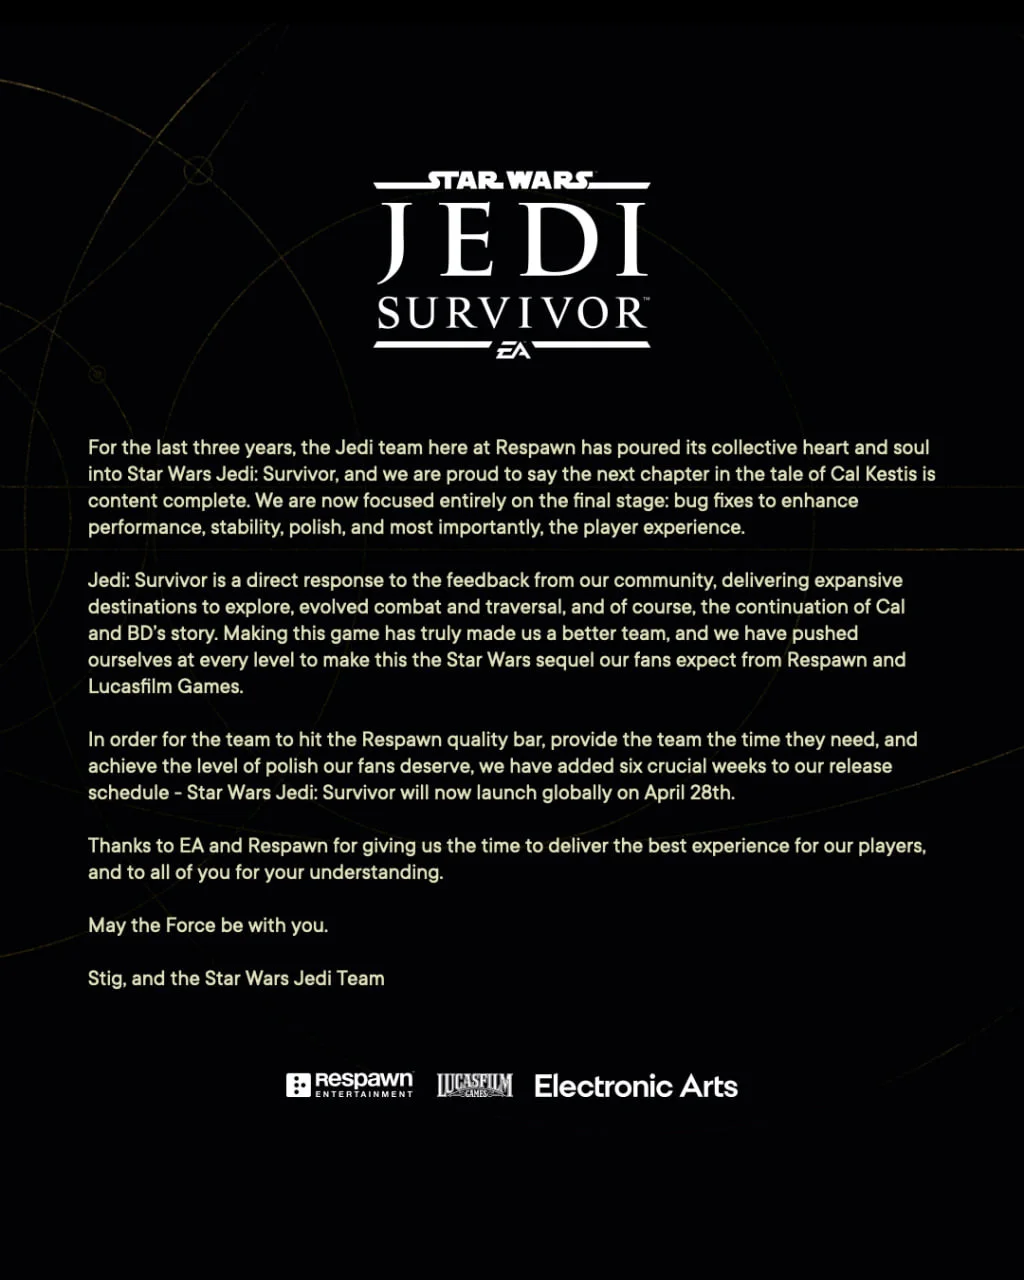 Star Wars Jedi: Survivor перенесли — игра выйдет 28 апреля - фото 1